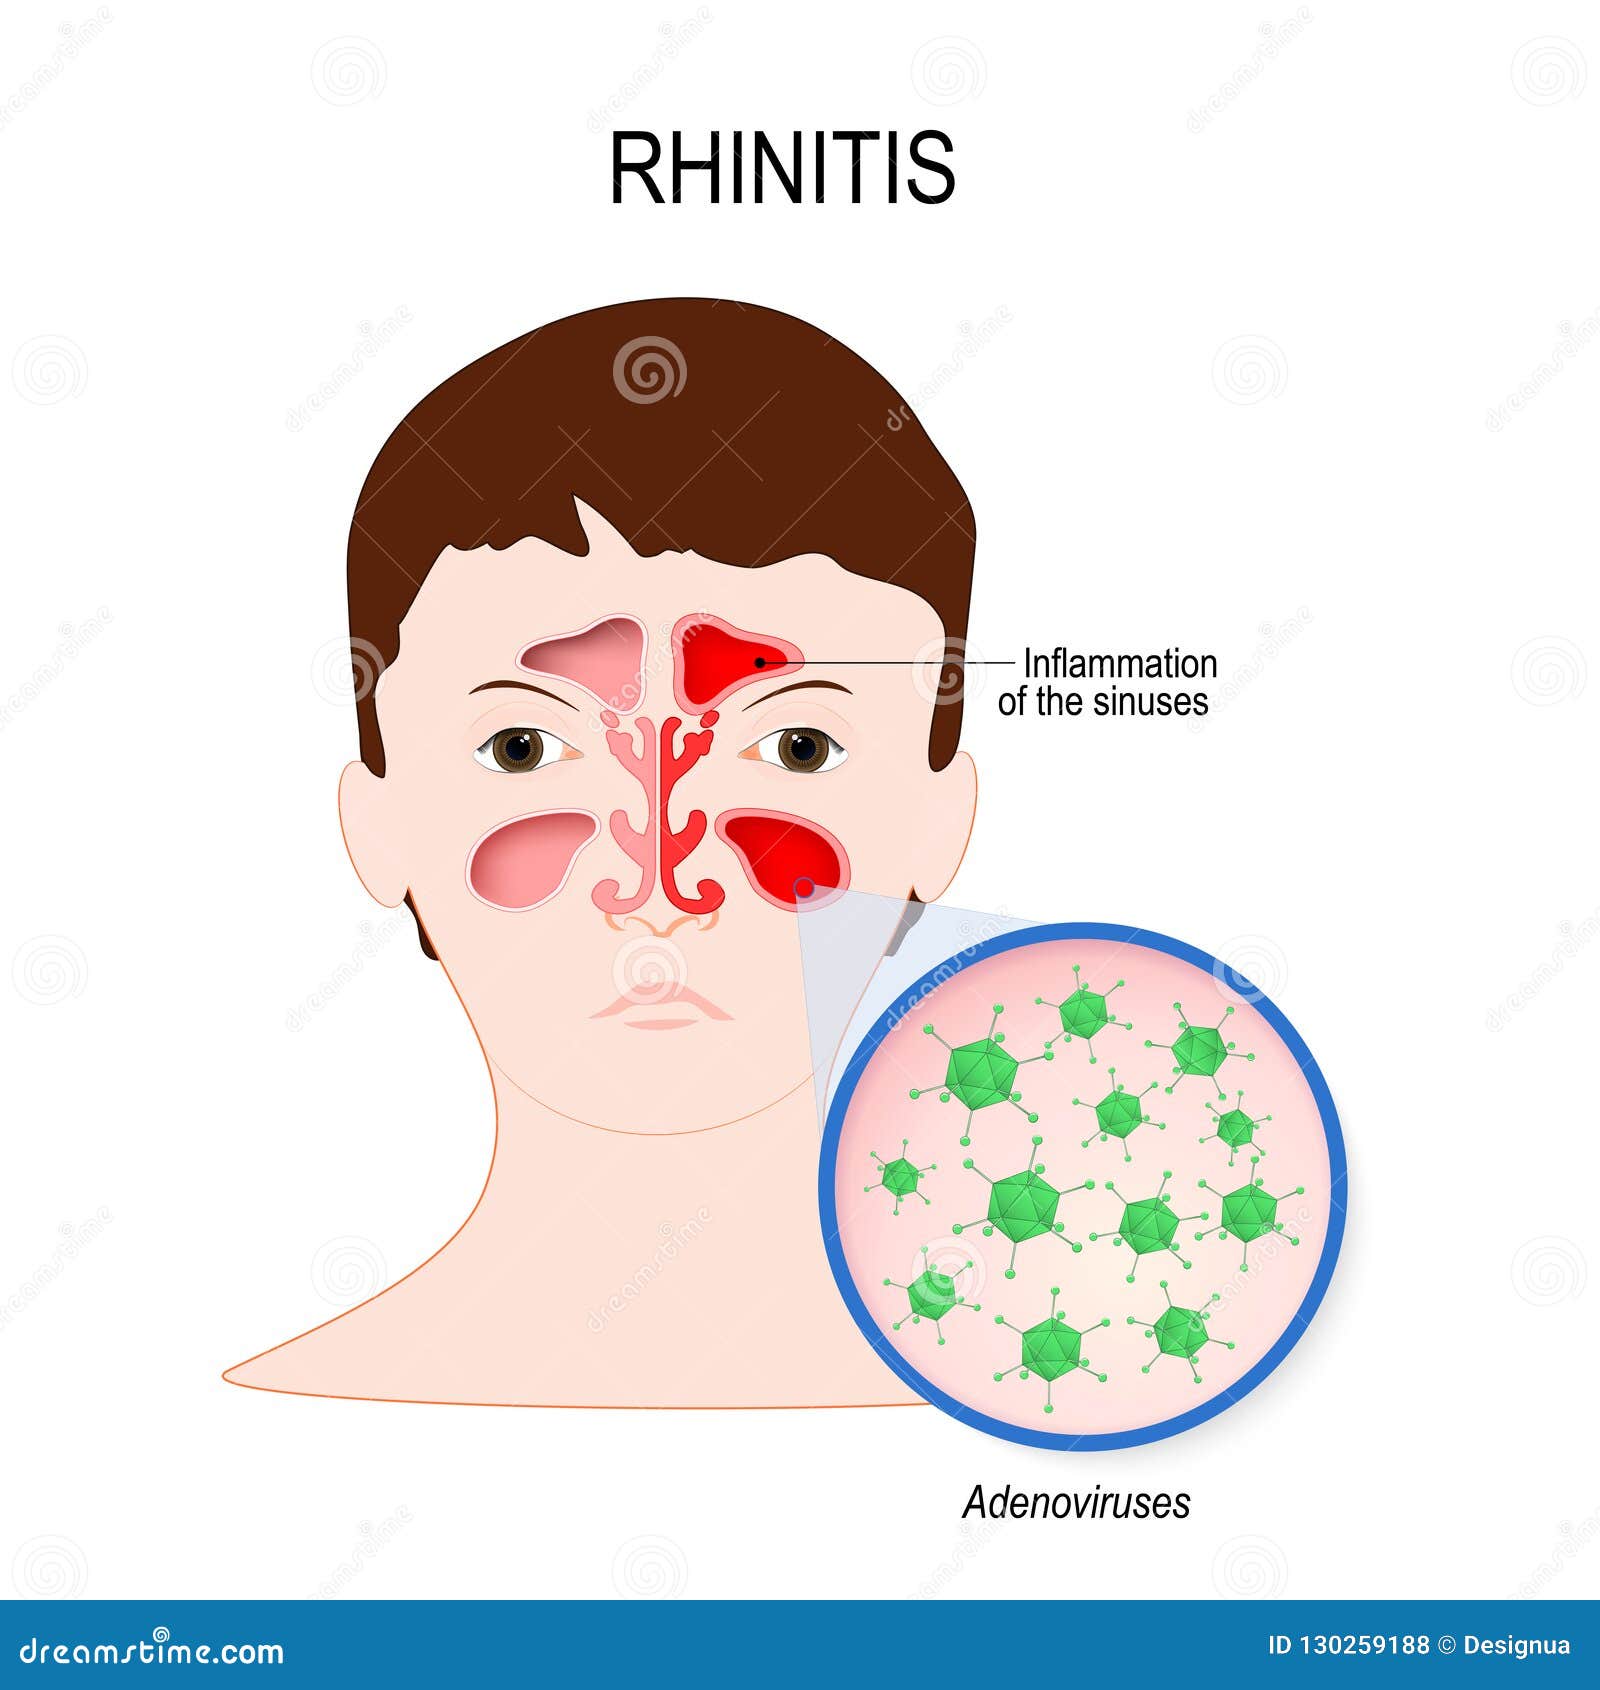 viral sinusitis rhinitis caused by adenovirus